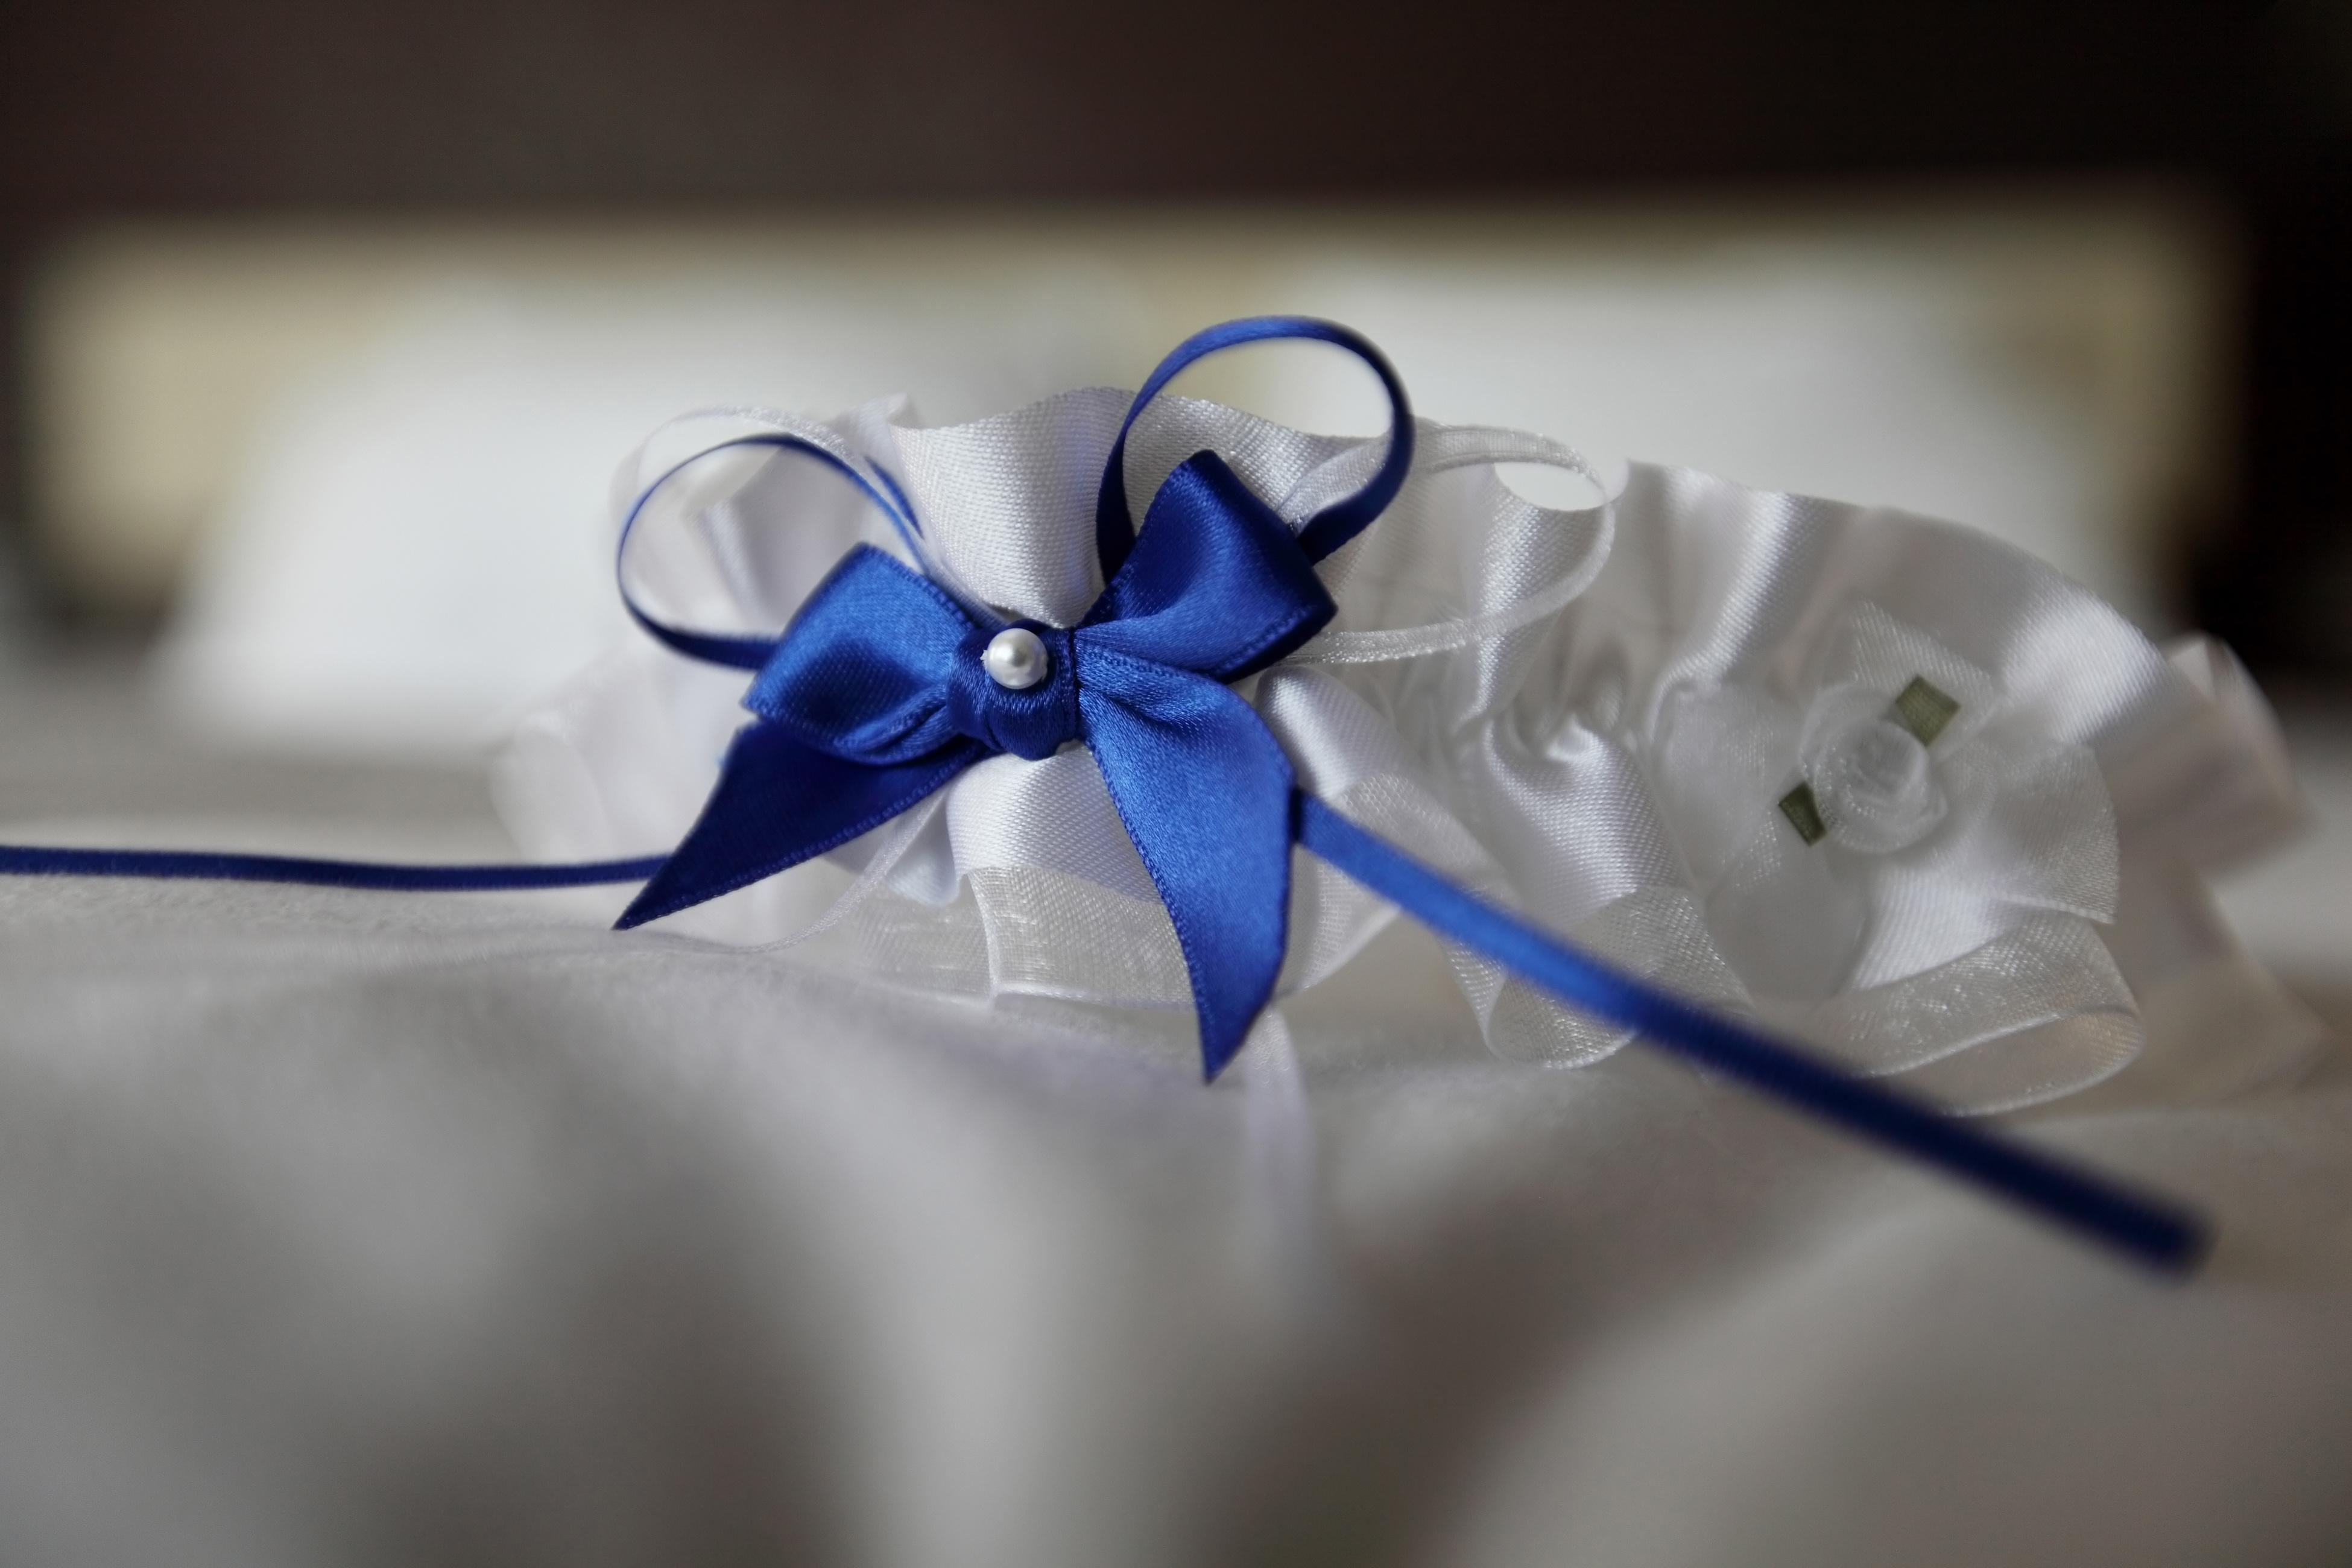 Calza nastro sposa blu chiaro blu con fiocco satin CUORICINI cucitura argento matrimonio 